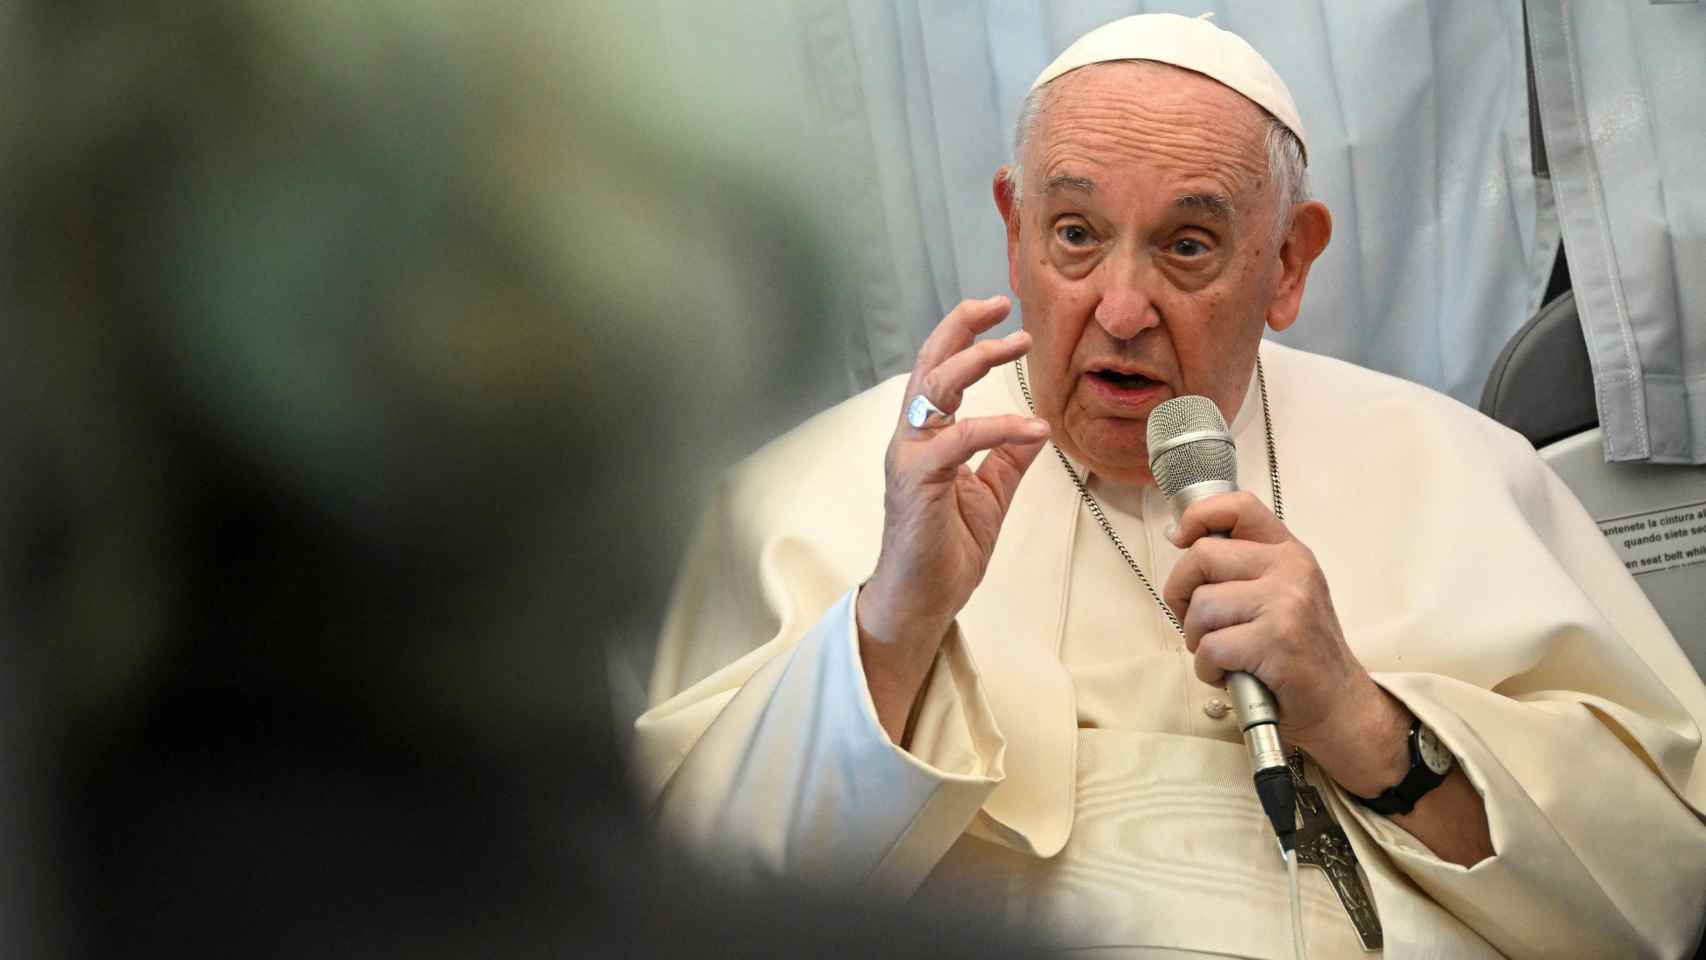 El Papa Francisco da una conferencia de prensa a bordo del avión cuando regresa al Vaticano después de su viaje apostólico a Hungría.